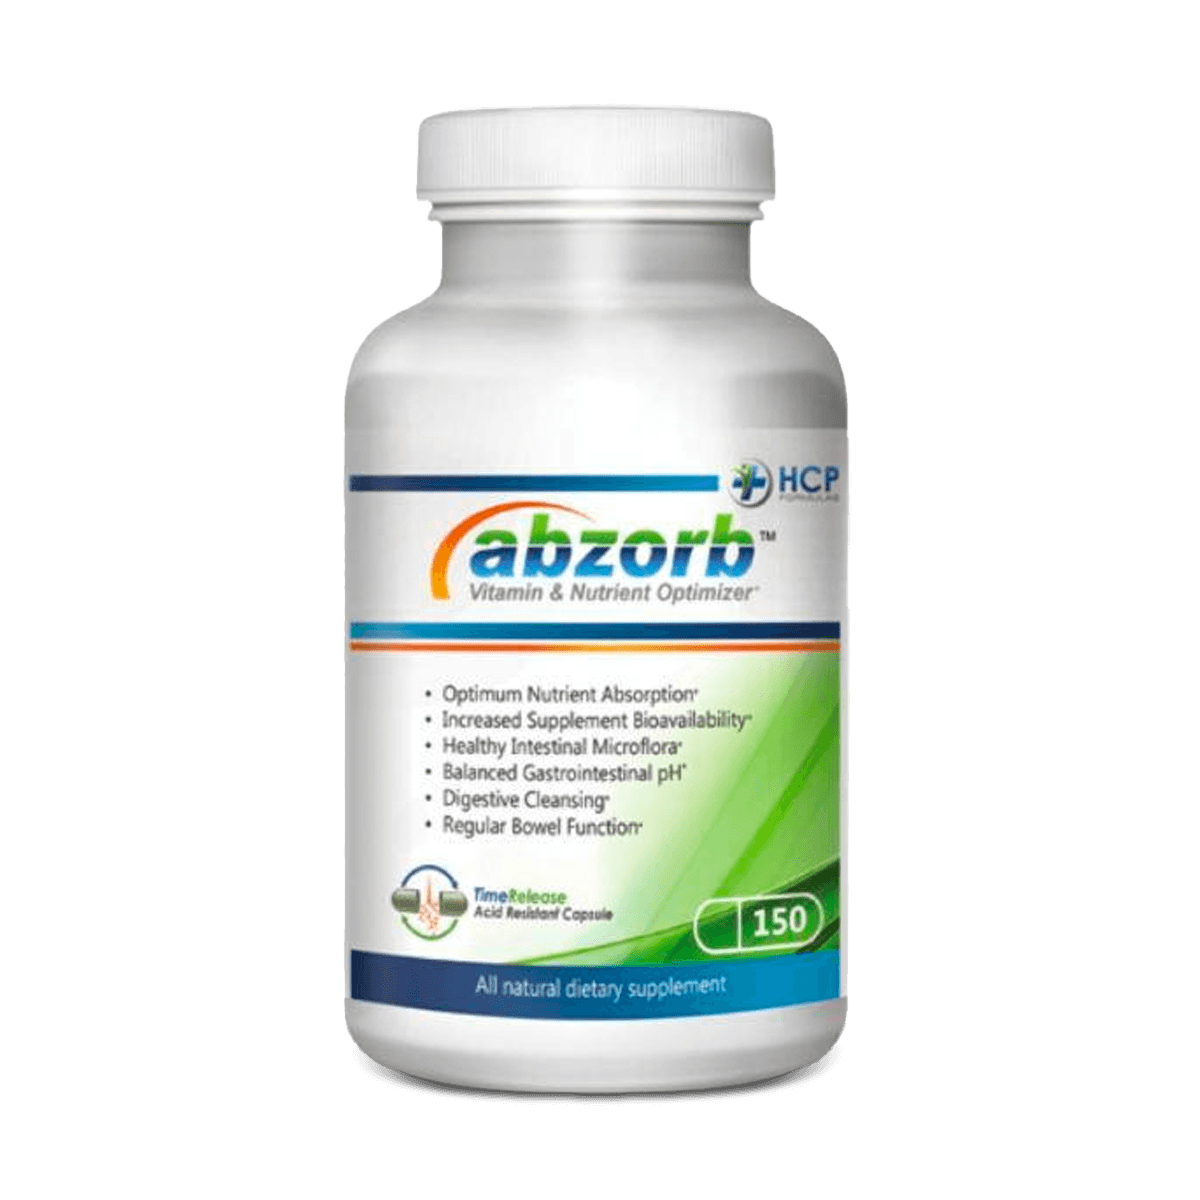 Abzorb - Vitamin & Nutrient Optimizer